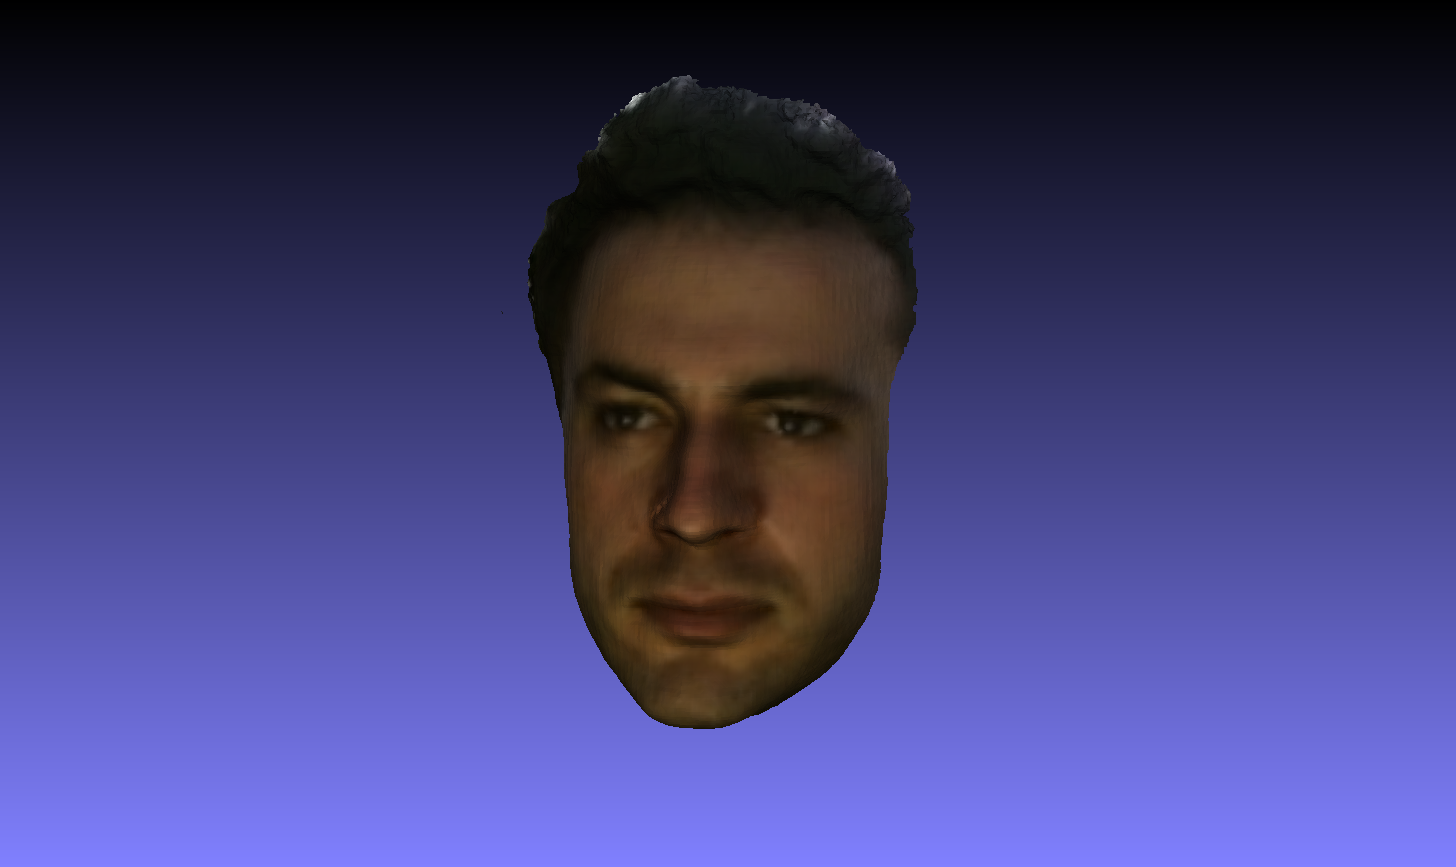 3D face scan